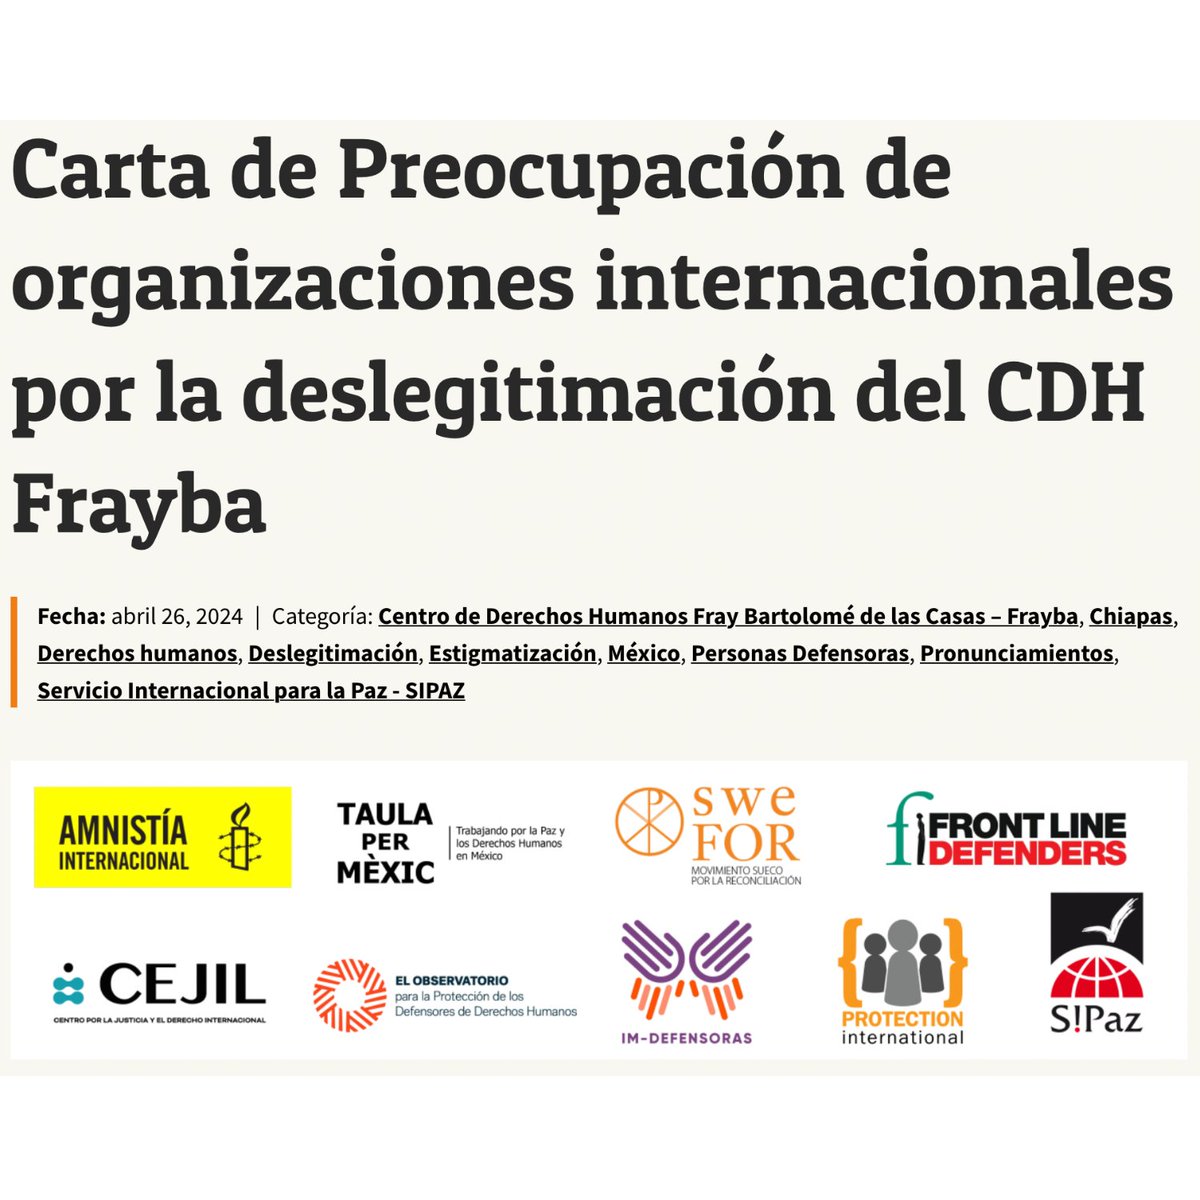 📢 Expresamos nuestra preocupación por los señalamientos, deslegitimación y estigmatización en contra del @CdhFrayba que restringen su espacio de acción para la defensa de los derechos humanos, exponiéndoles a graves riesgos en el desempeño de su labor📲 swefor.org/es/mexico/cart…